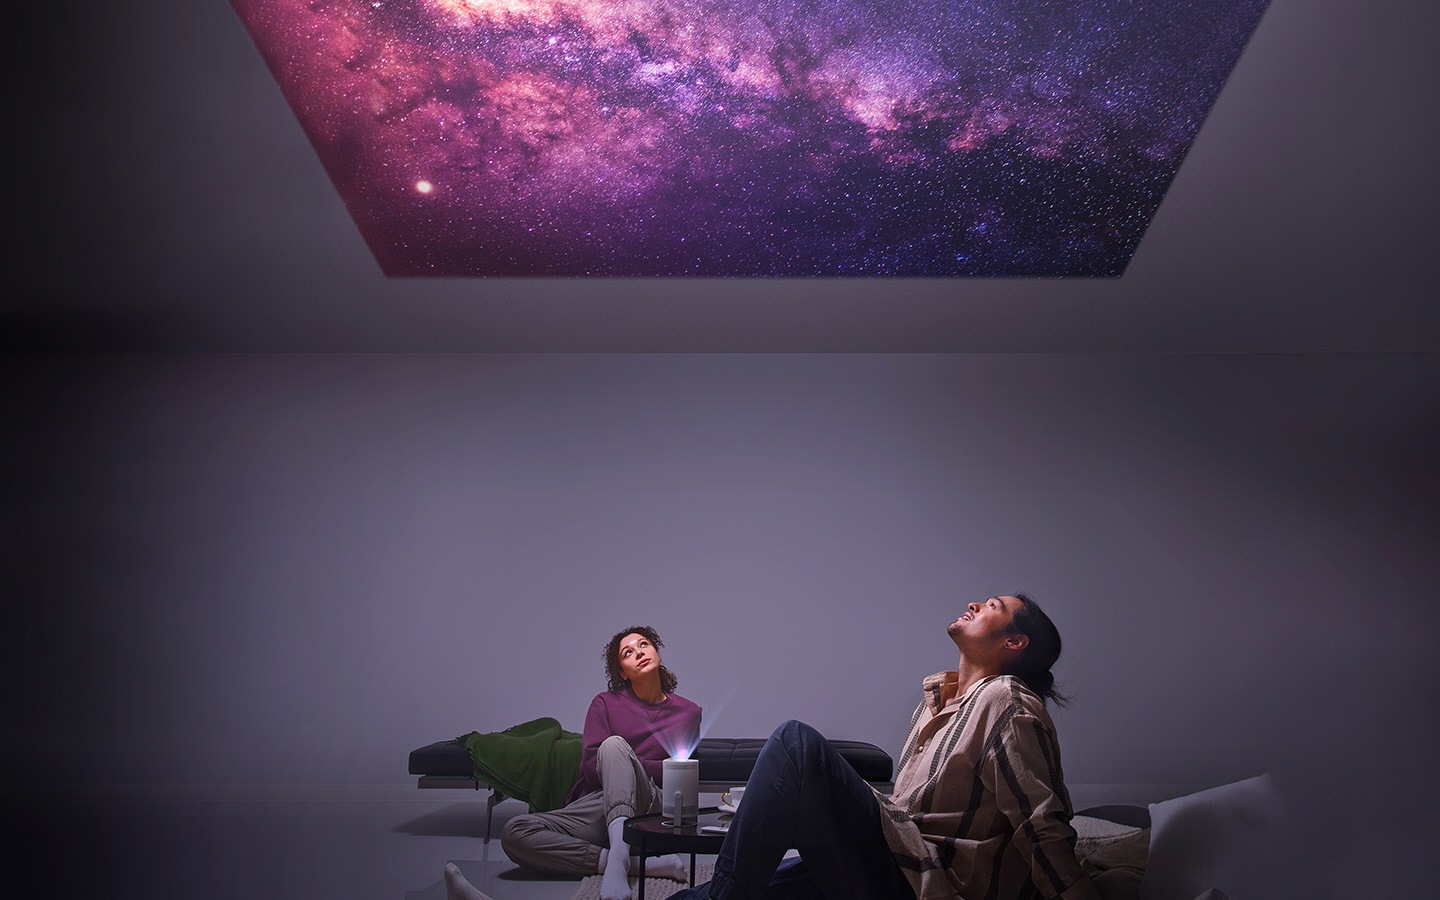 Применение проектора для проецирования звёздного неба на потолок